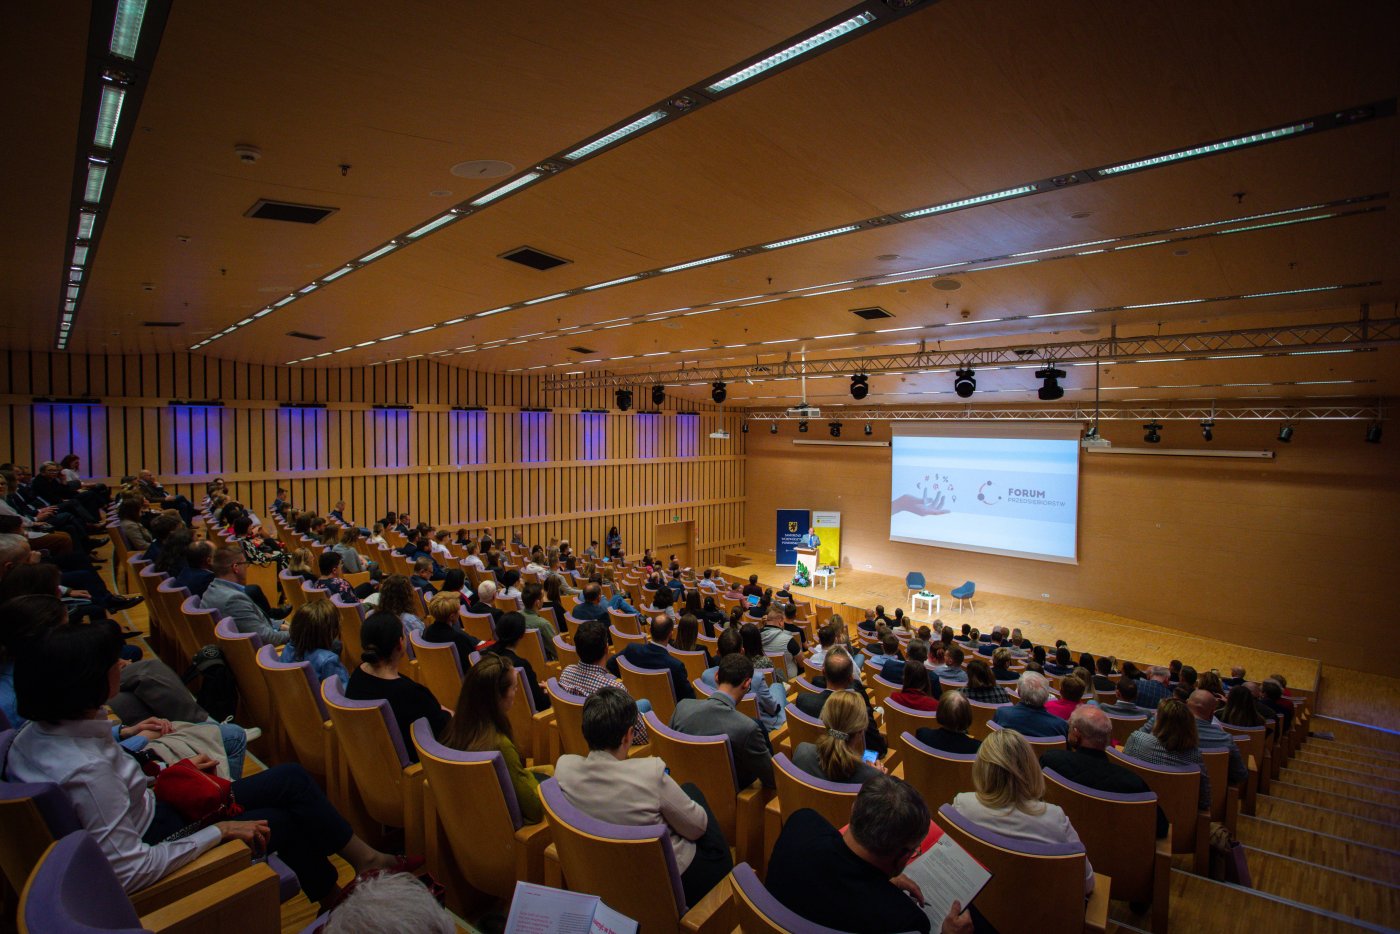 Sala konferencyjna w PPNT Gdynia, publicznośc na widowni, scena podświetlona, osoba przemawia zza pulpitu, wyświetlany obraz na ekranie